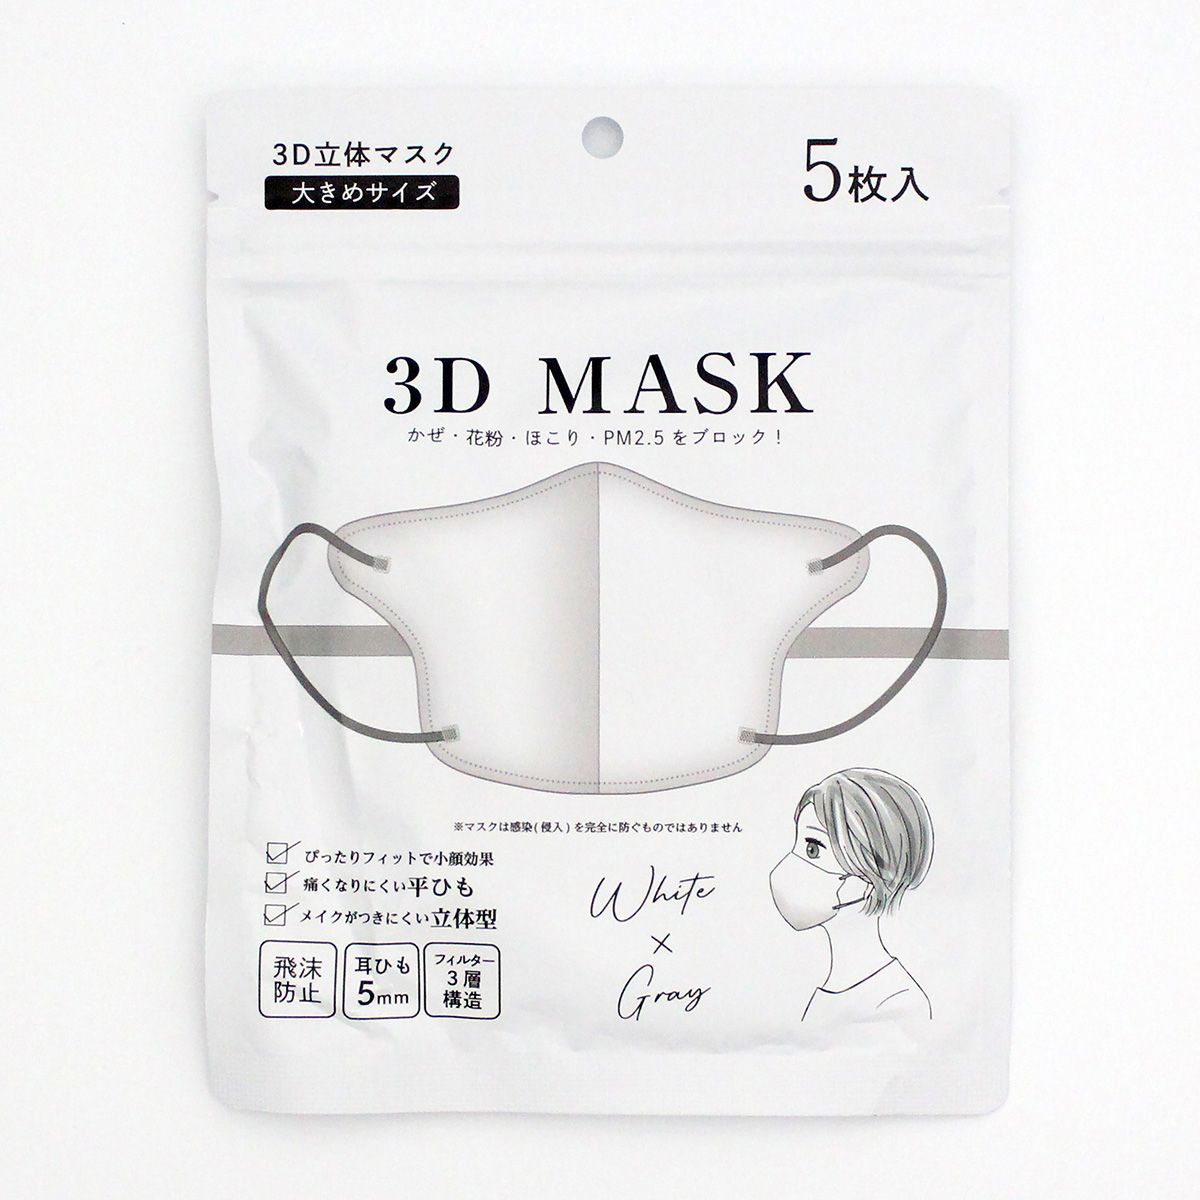 3D立体マスク 不織布マスク ホワイトxグレー 大きめ 5枚入り 1523/347004